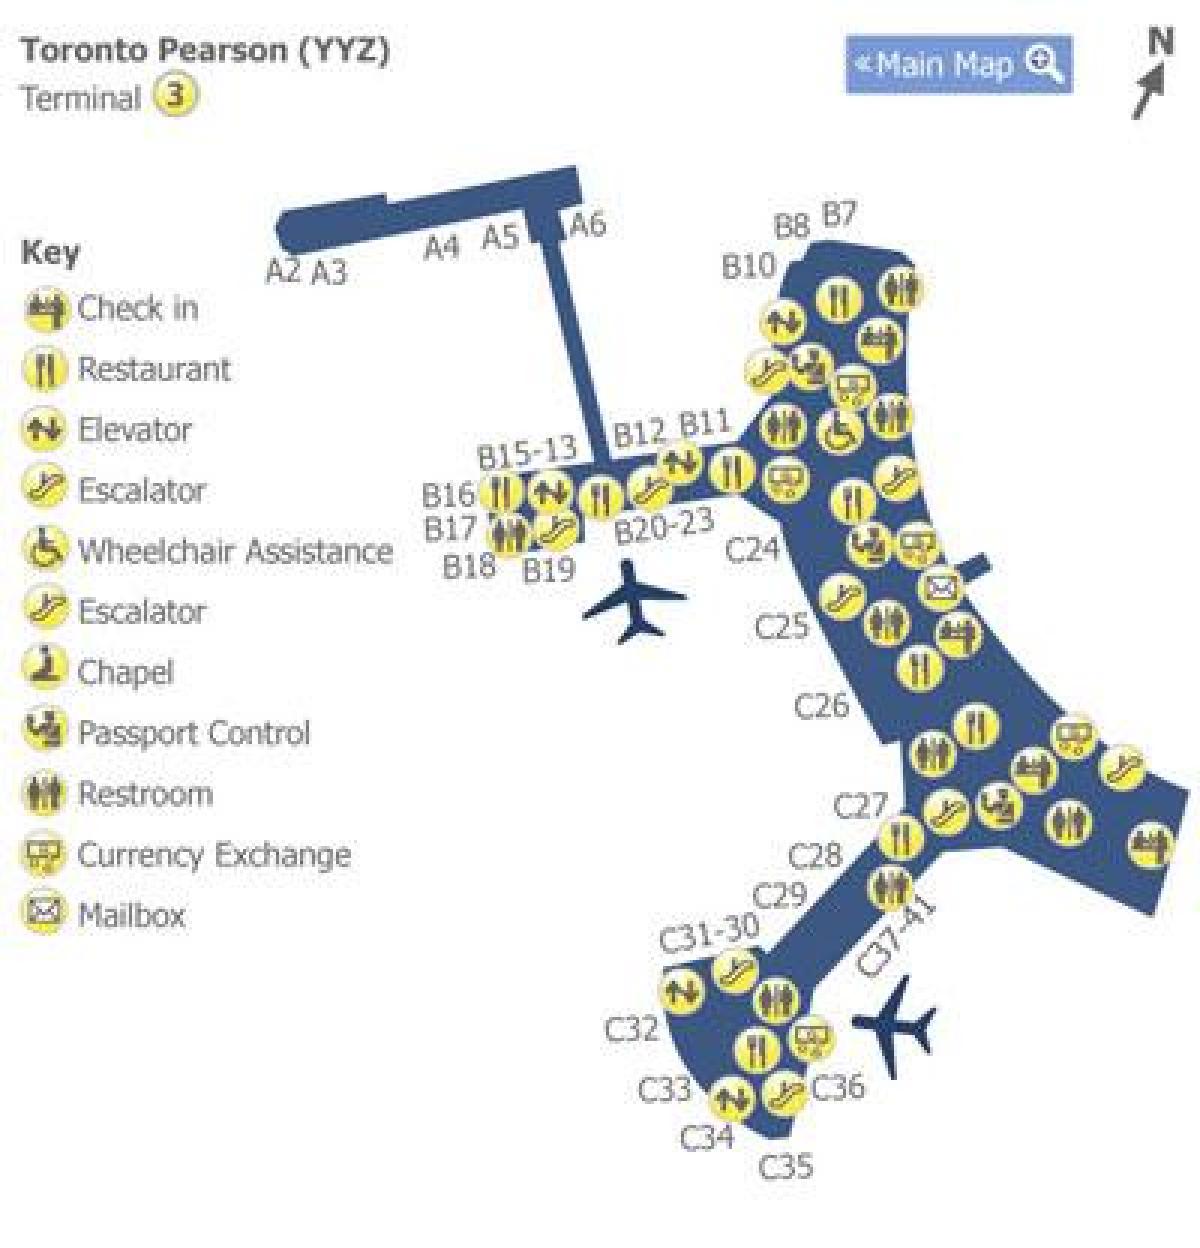 מפה של טורונטו פירסון התעופה טרמינל 3